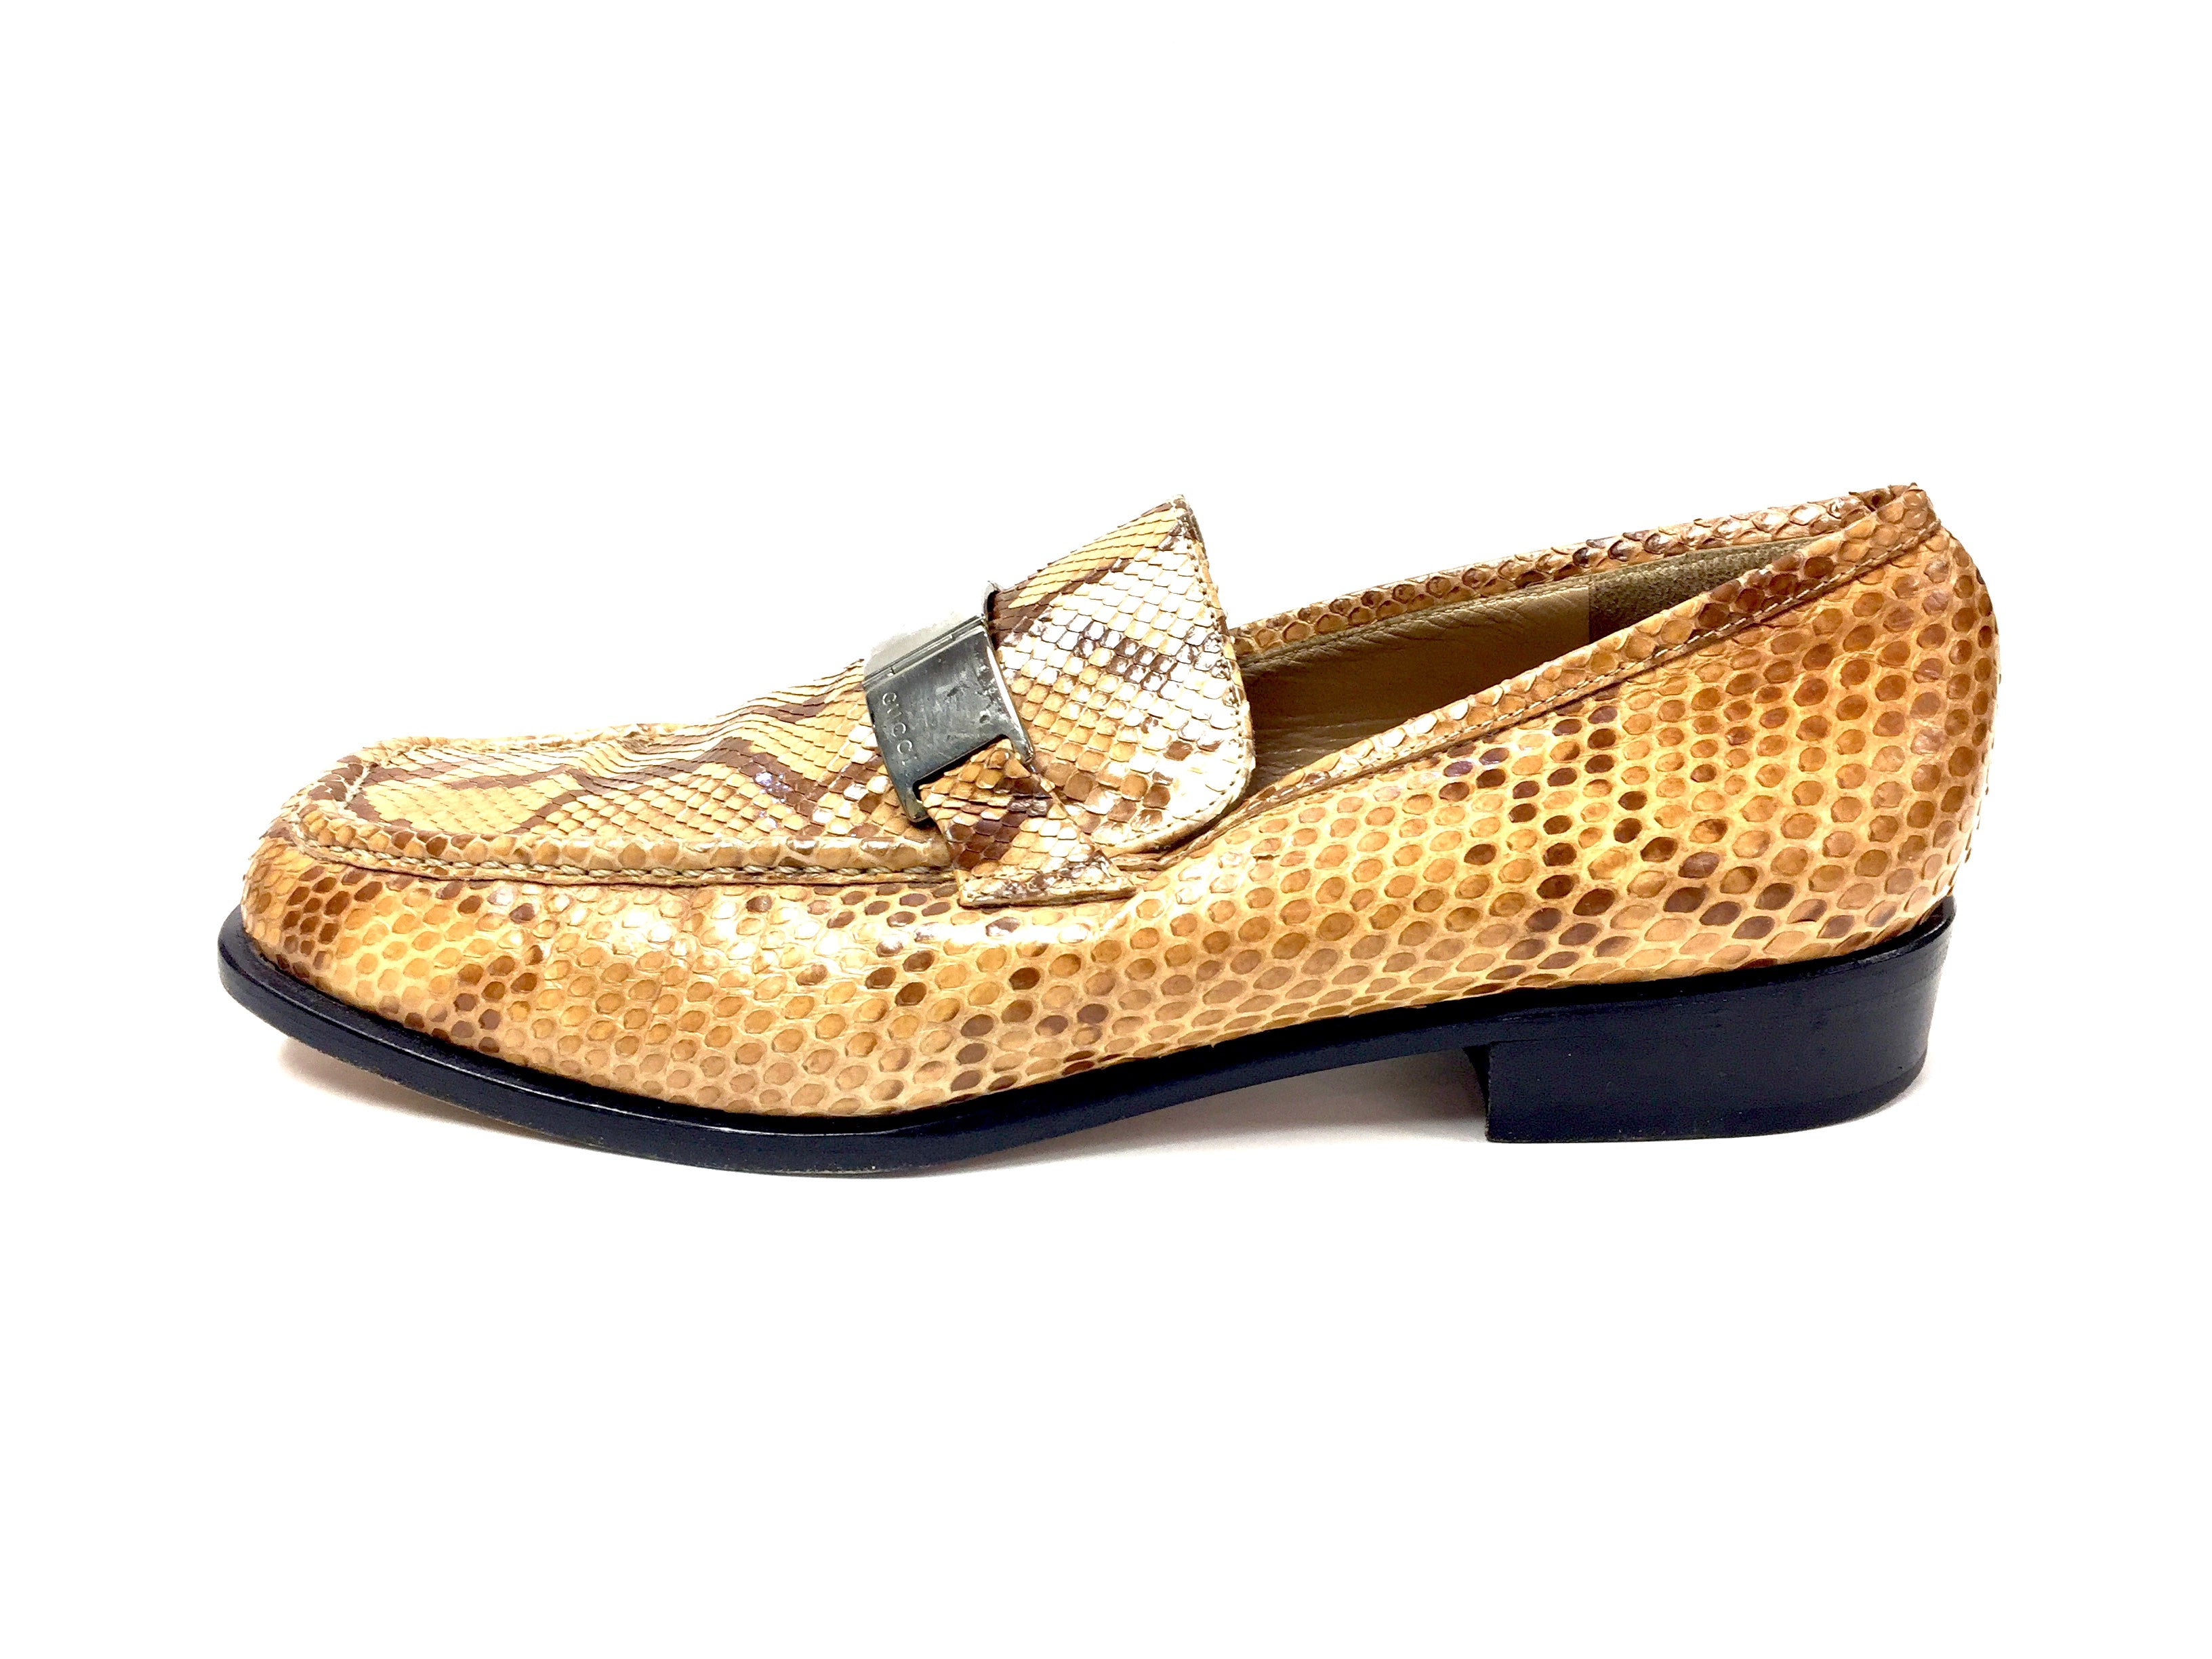 golden gucci shoes